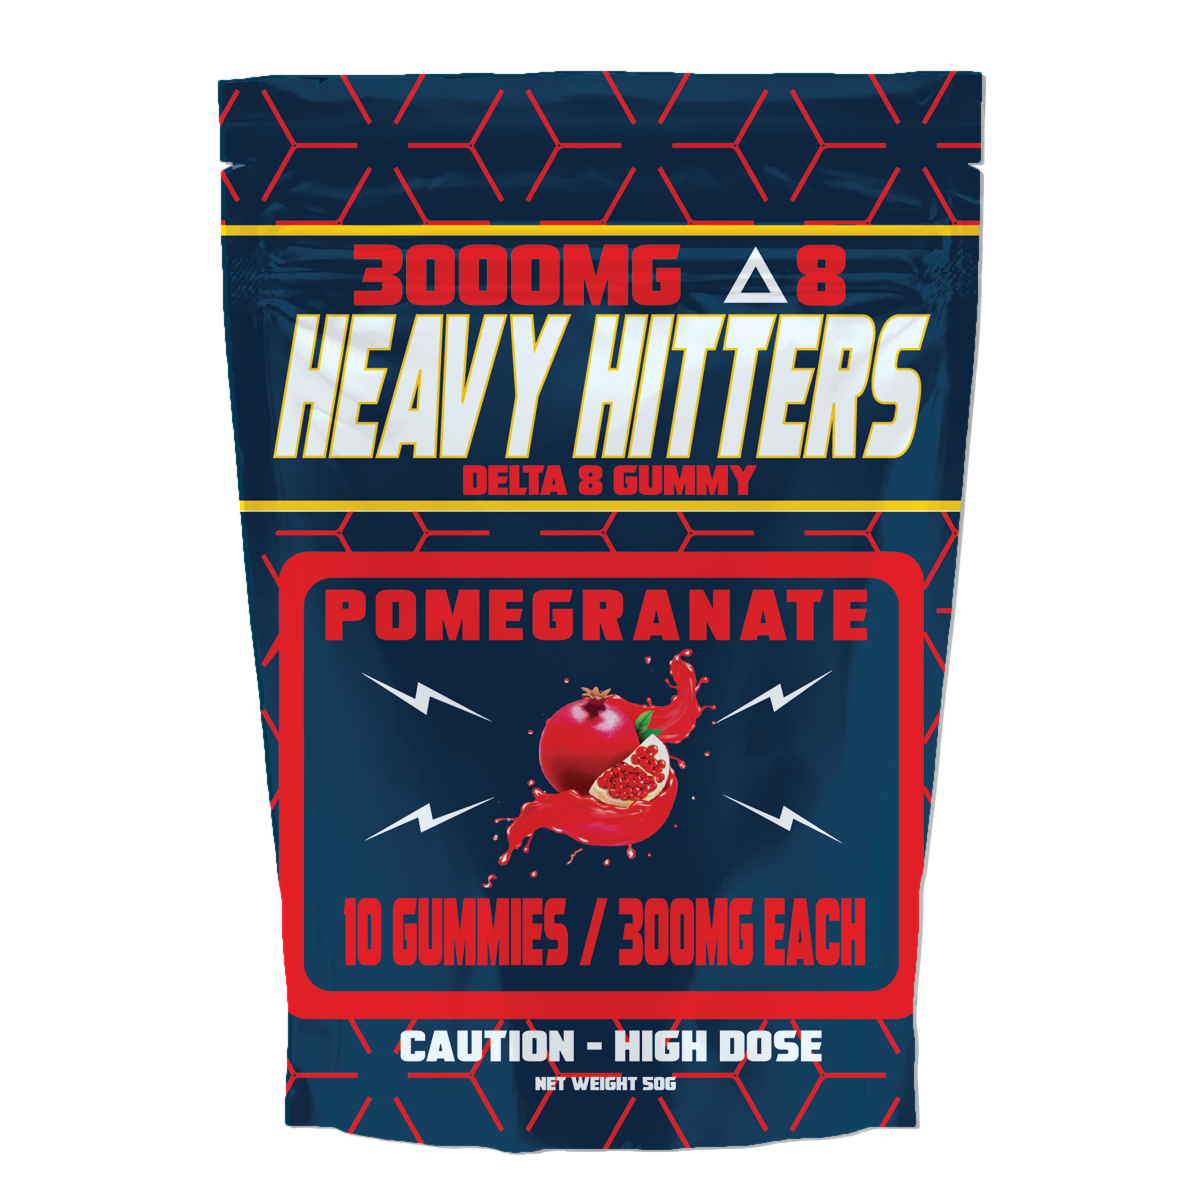 Heavy hitter pomegranate